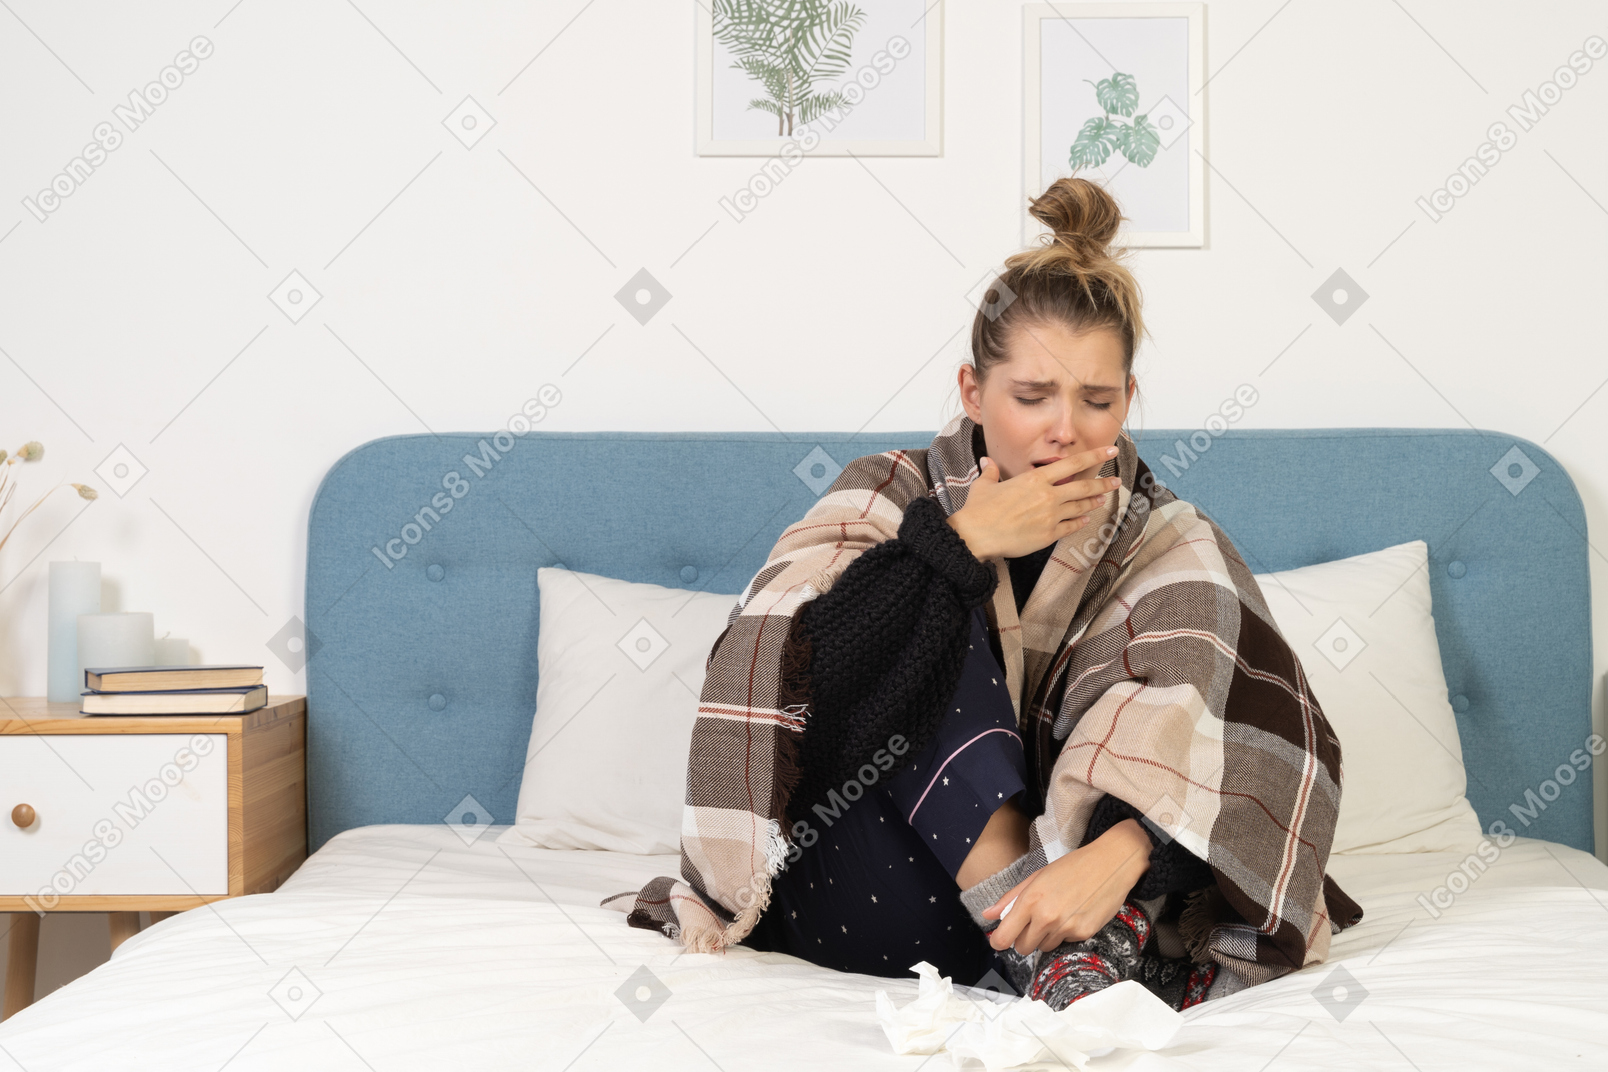 Vorderansicht einer kranken, hustenden jungen dame im schlafanzug, eingehüllt in eine karierte decke im bett